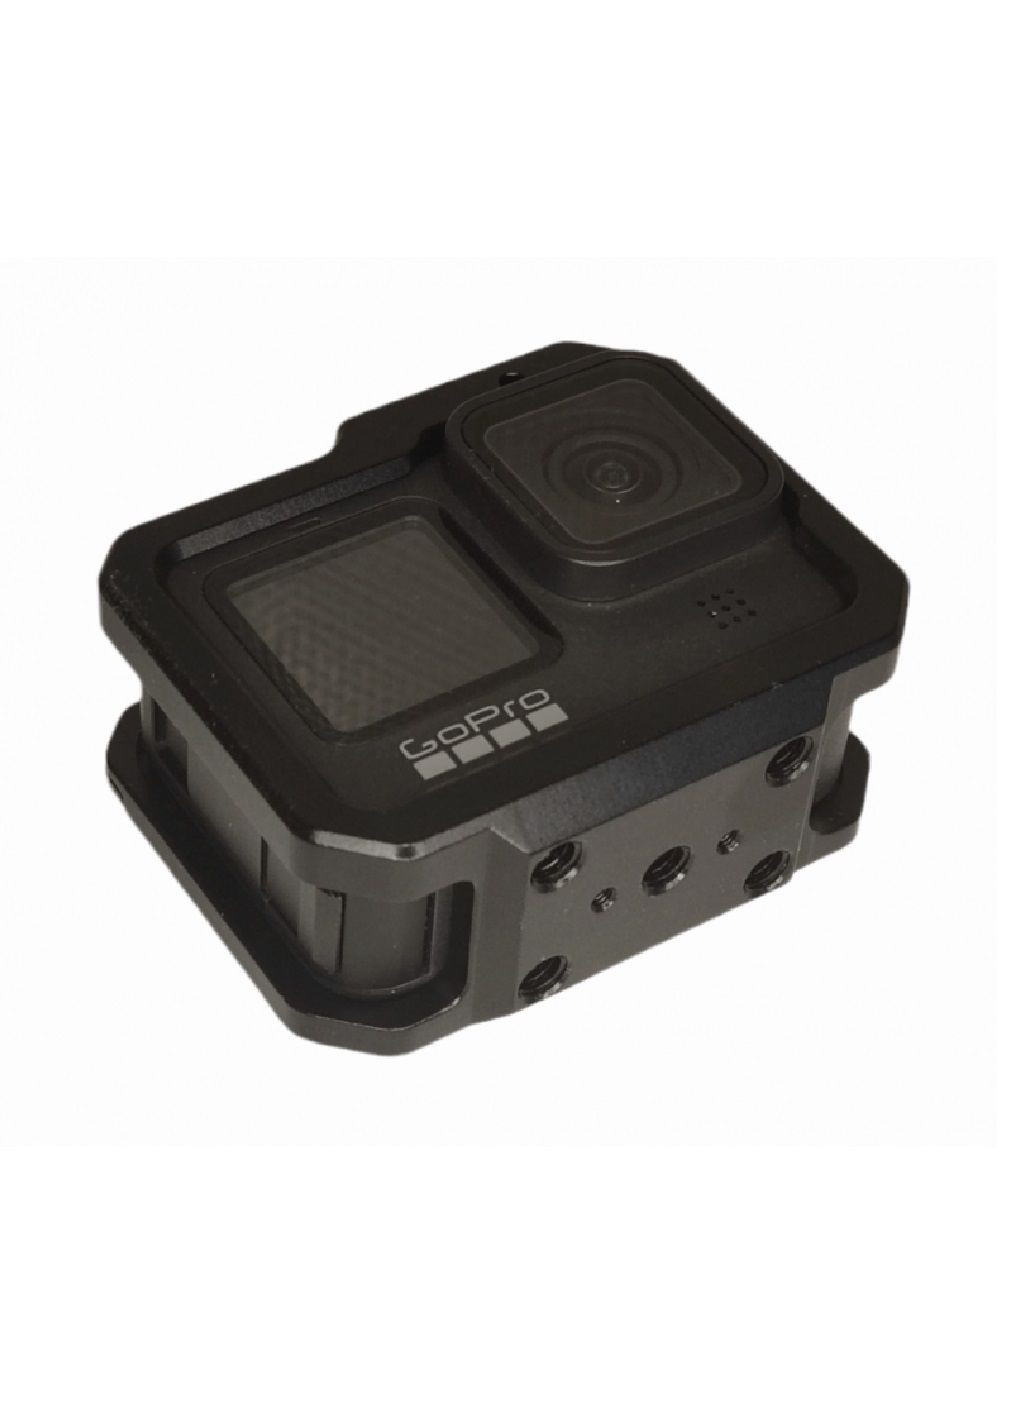 Защитная рамка алюминиевая для защиты от ударов повреждений экшн камер GoPro Hero 12, 11, 10, 9 81х65х34 мм (476744-Prob) Unbranded (290250838)